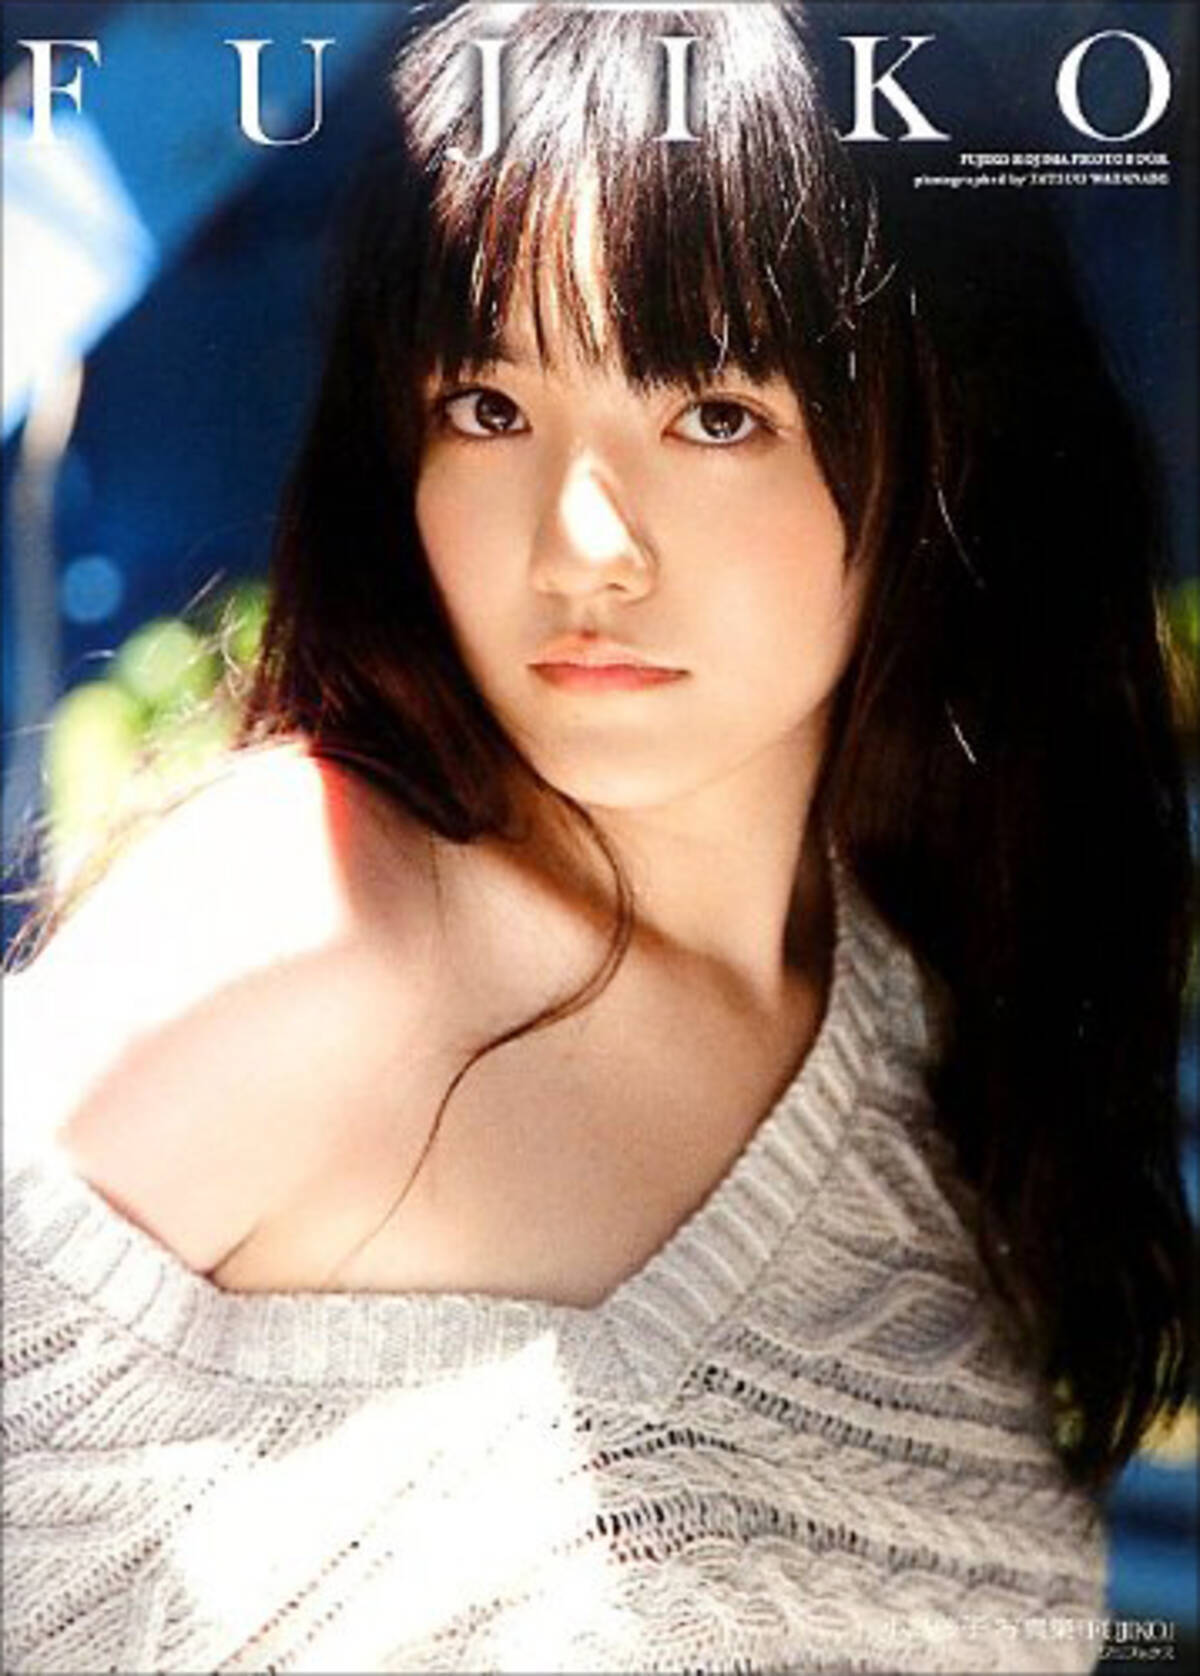 ふわふわ笑顔で本格ブレイクなるか 小島藤子 15年期待の若手大河女優 15年1月2日 エキサイトニュース